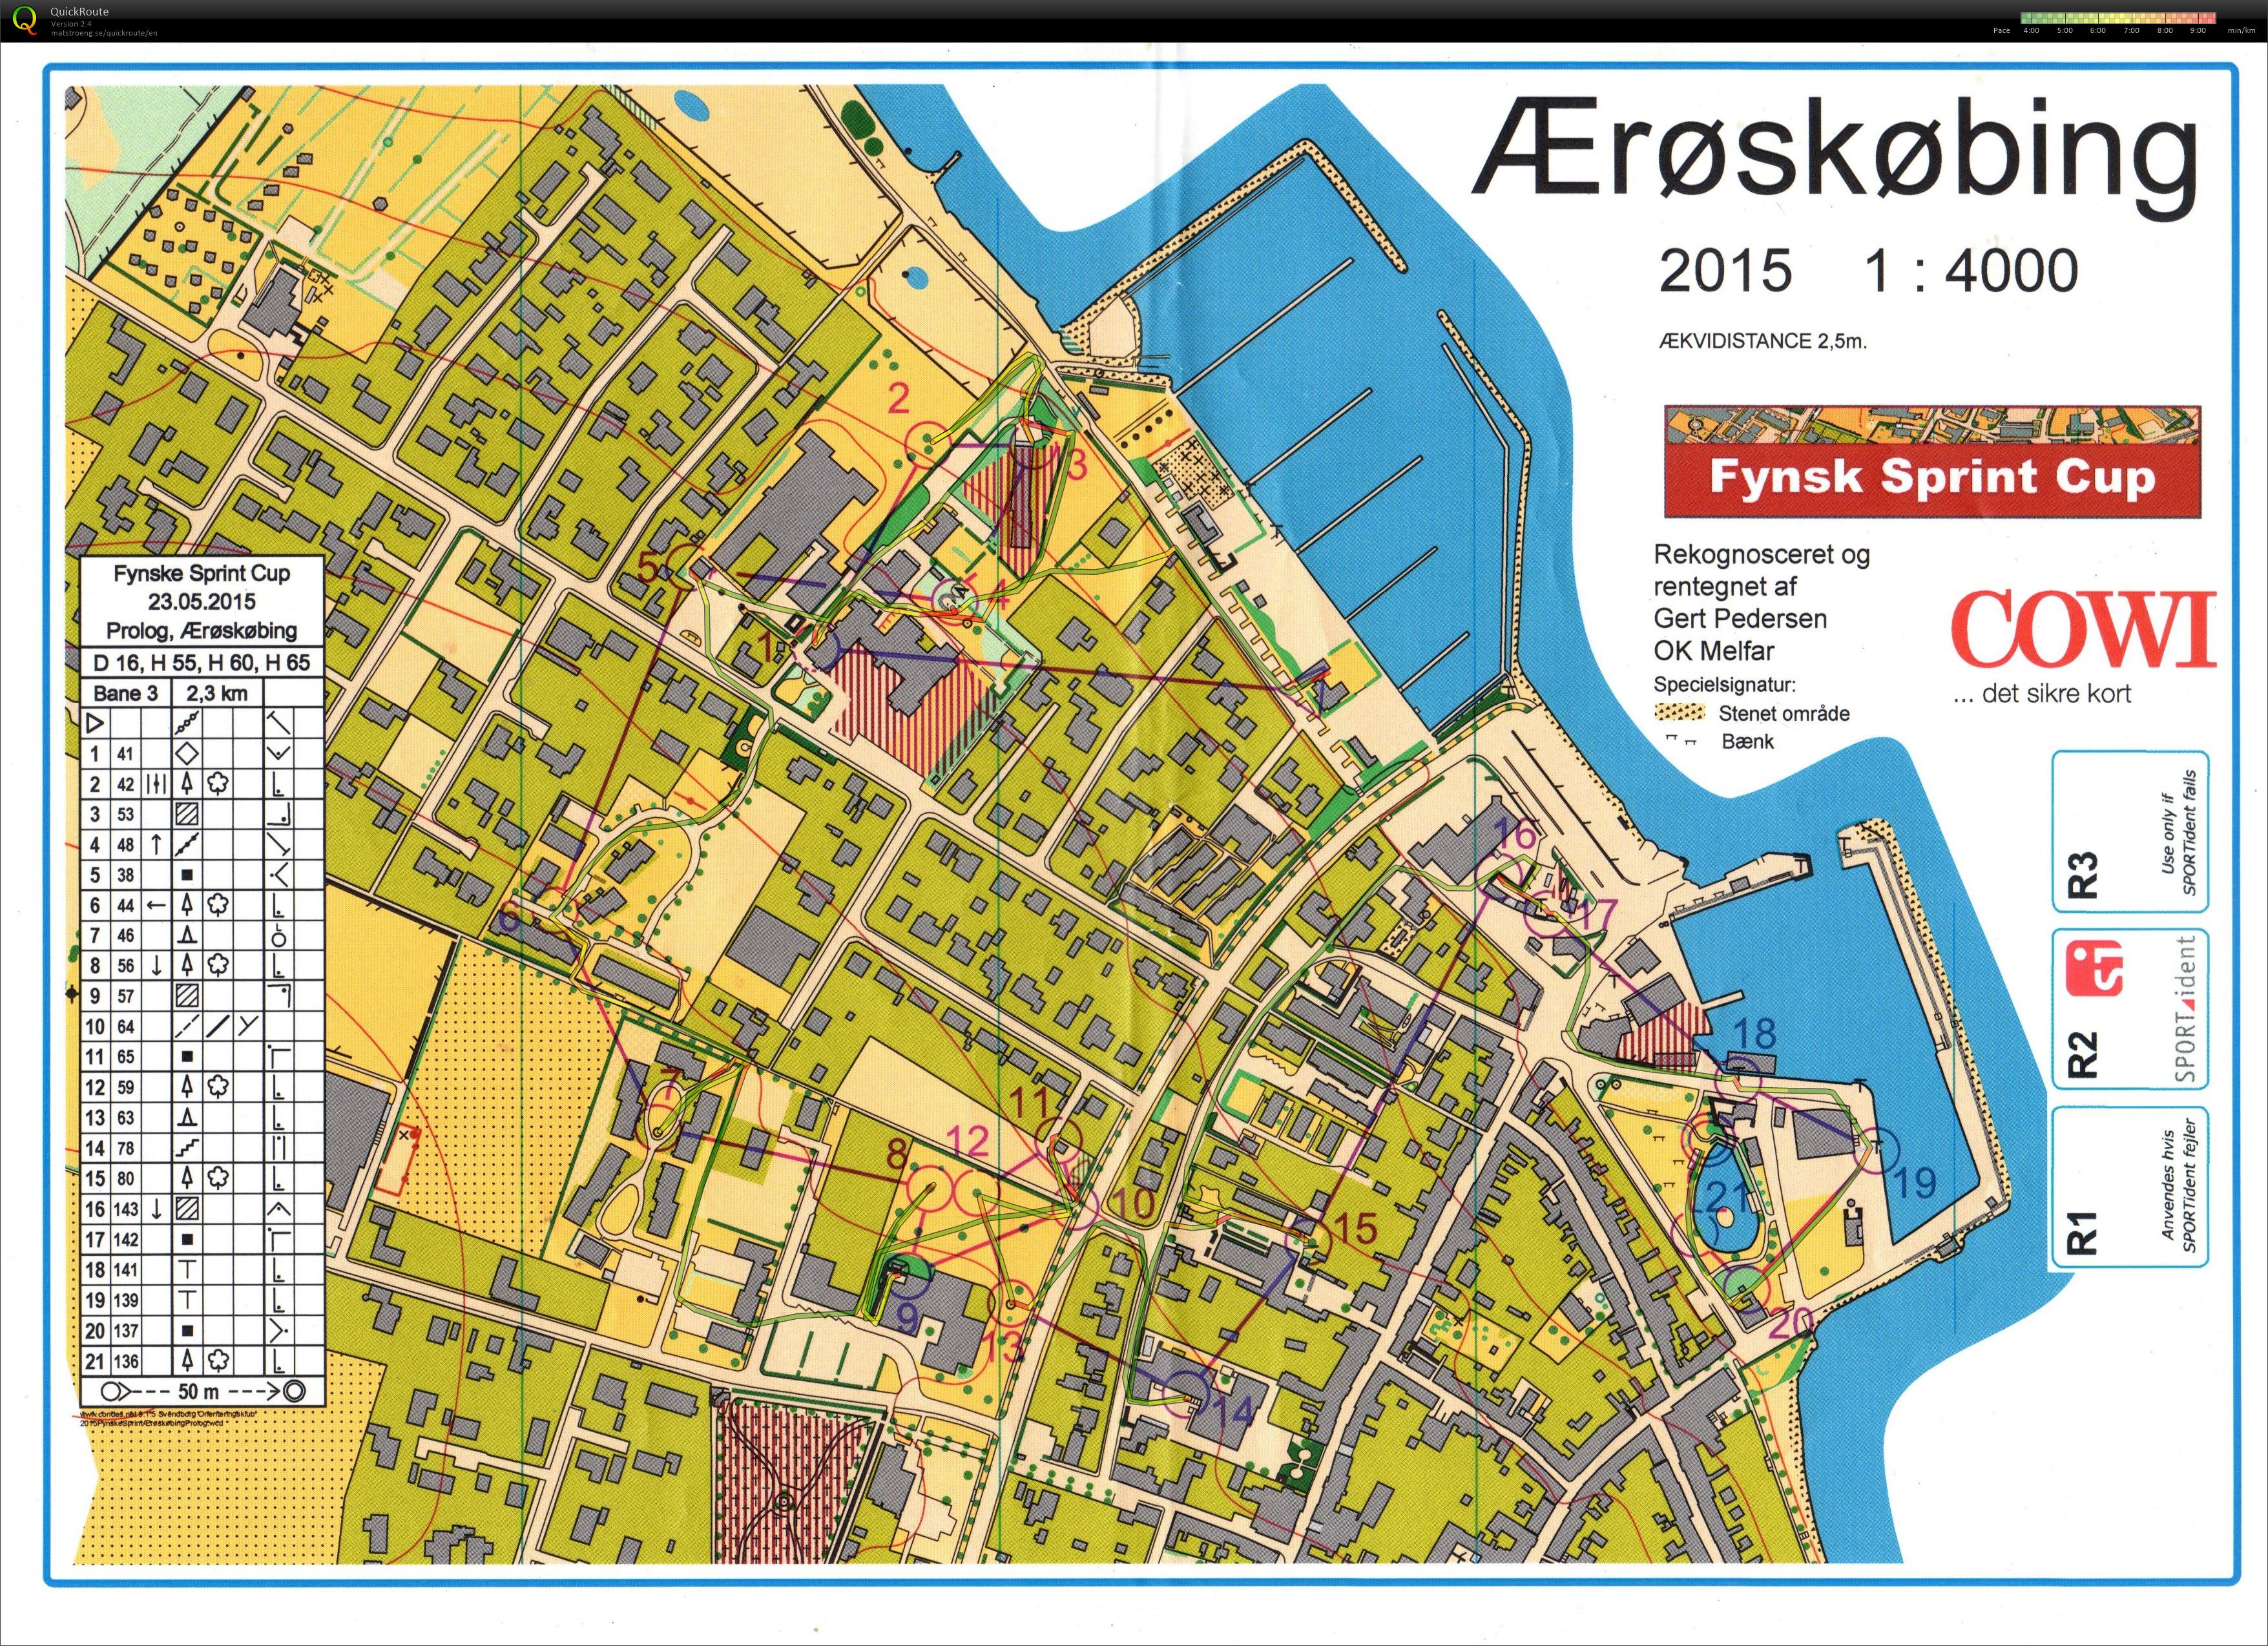 Fynsk Sprint Cup - prolog1 (23/05/2015)